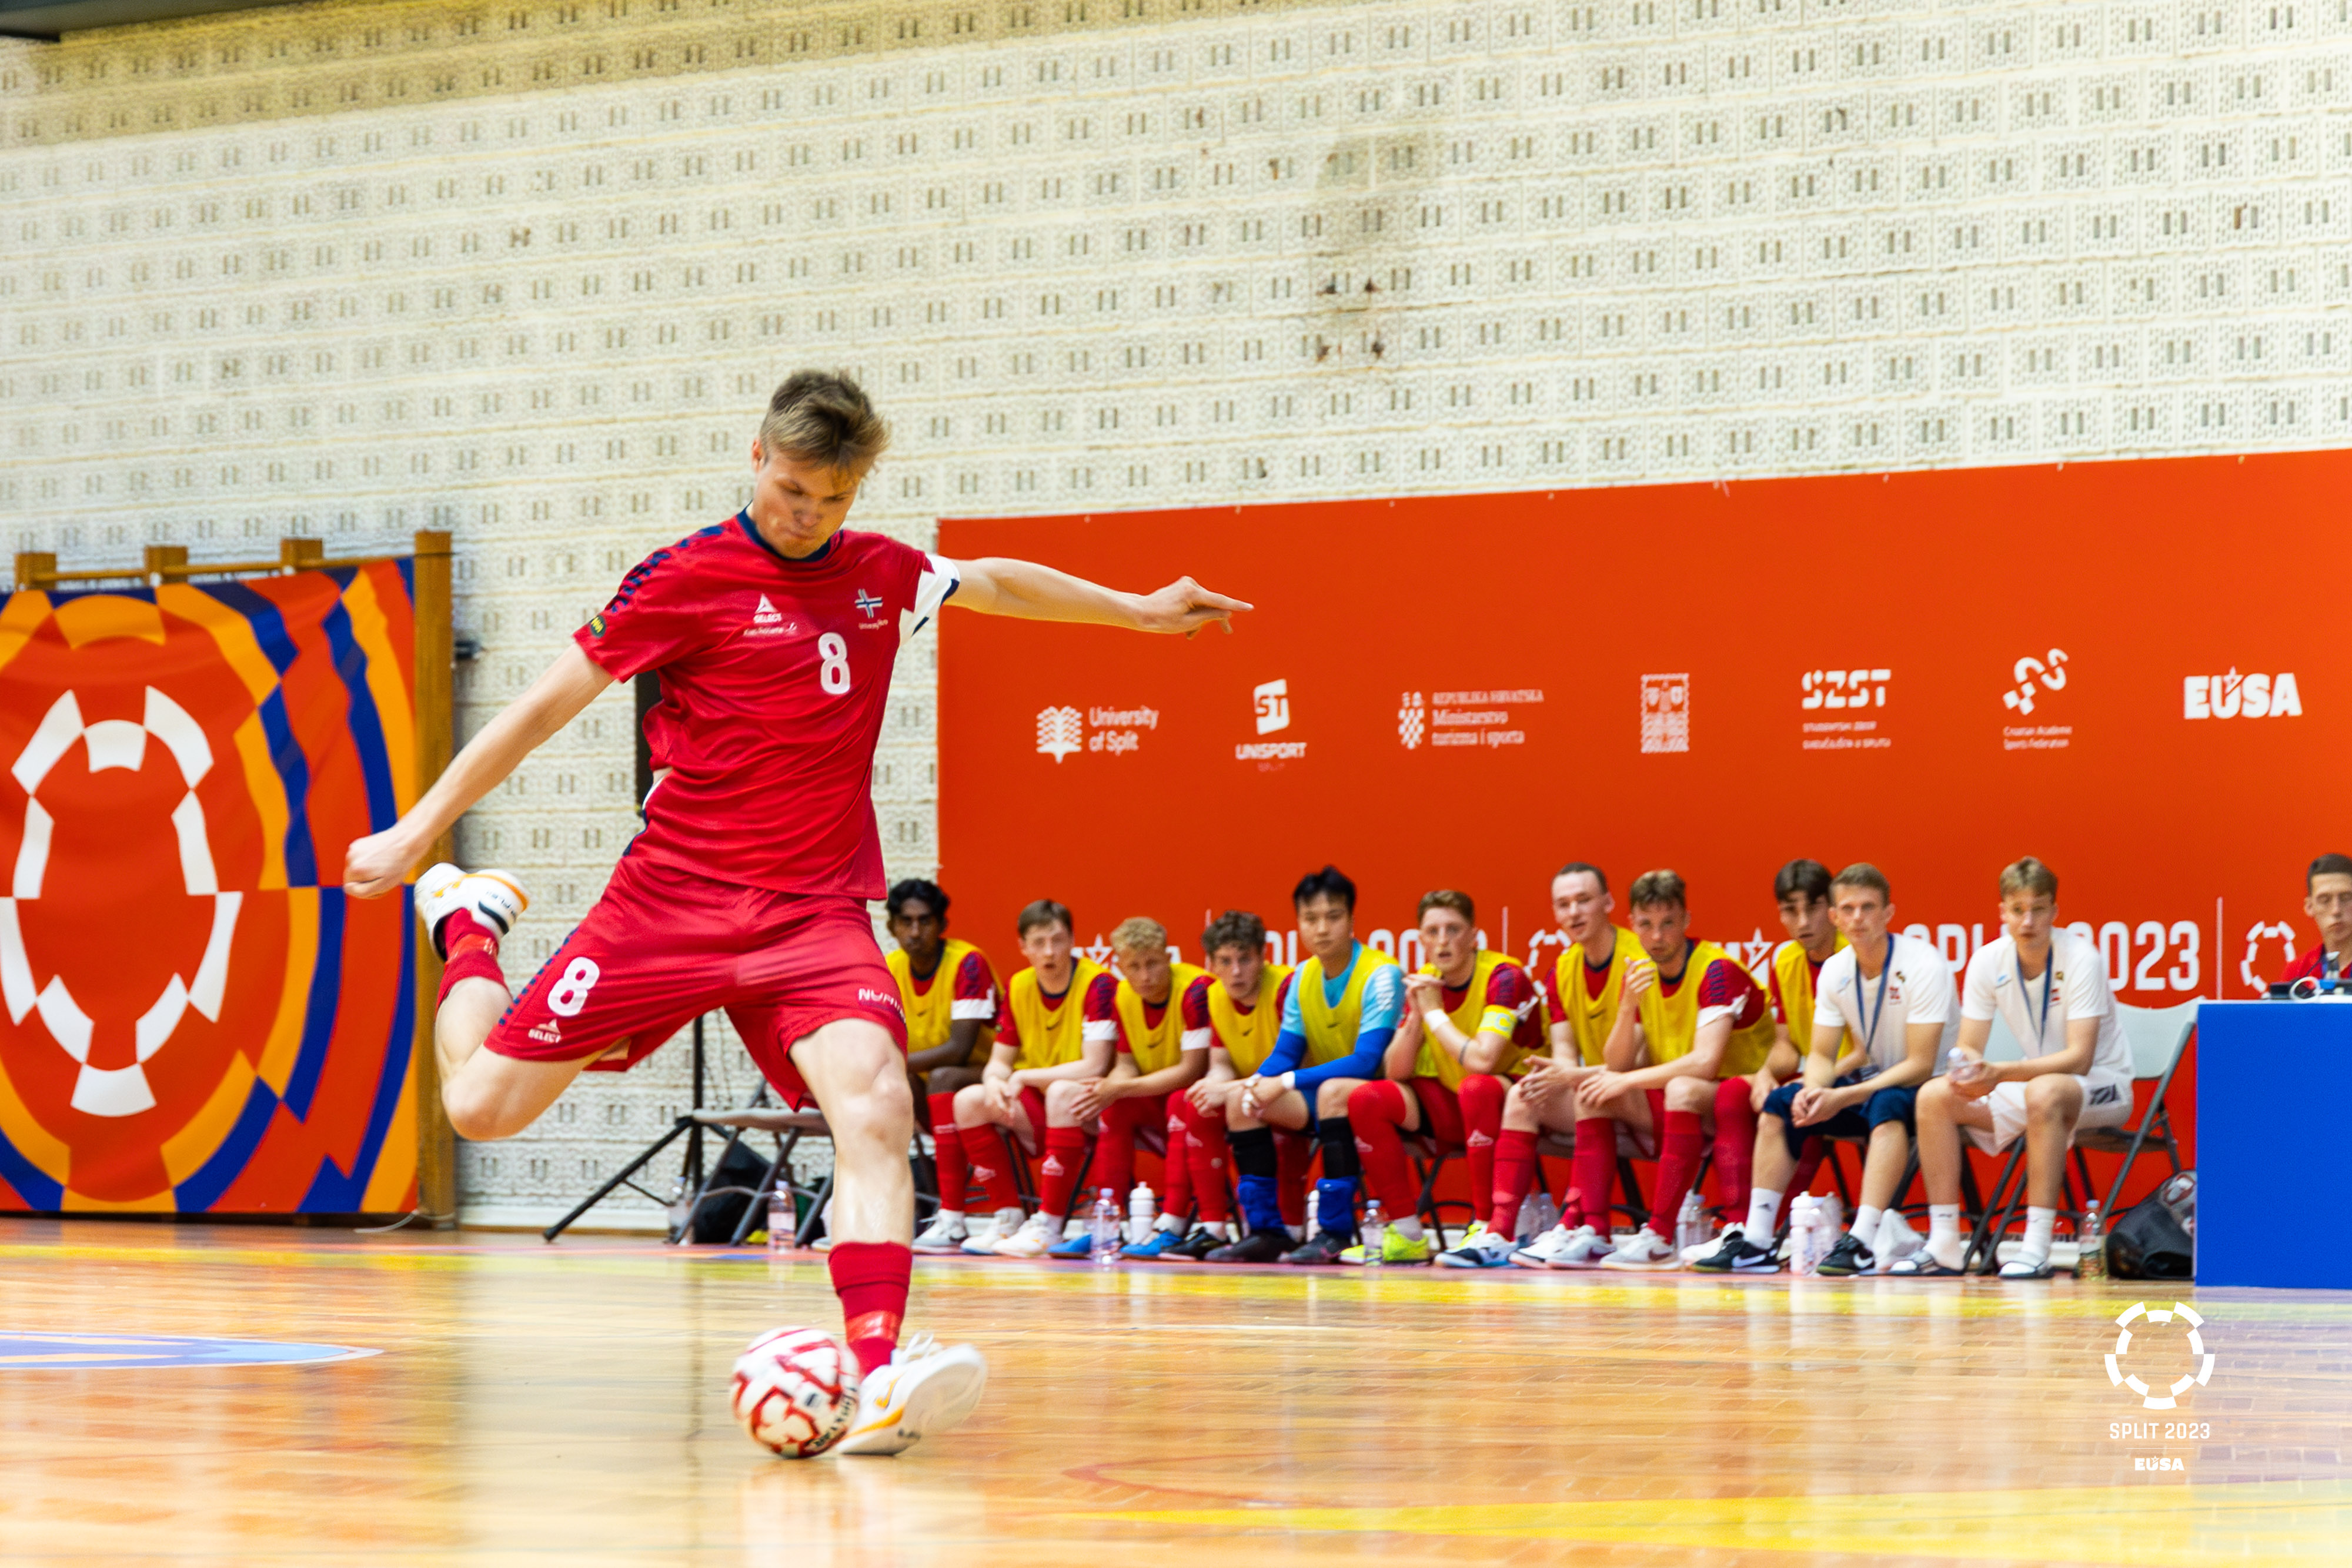 Great opening of EUC Futsal 2023 in Split